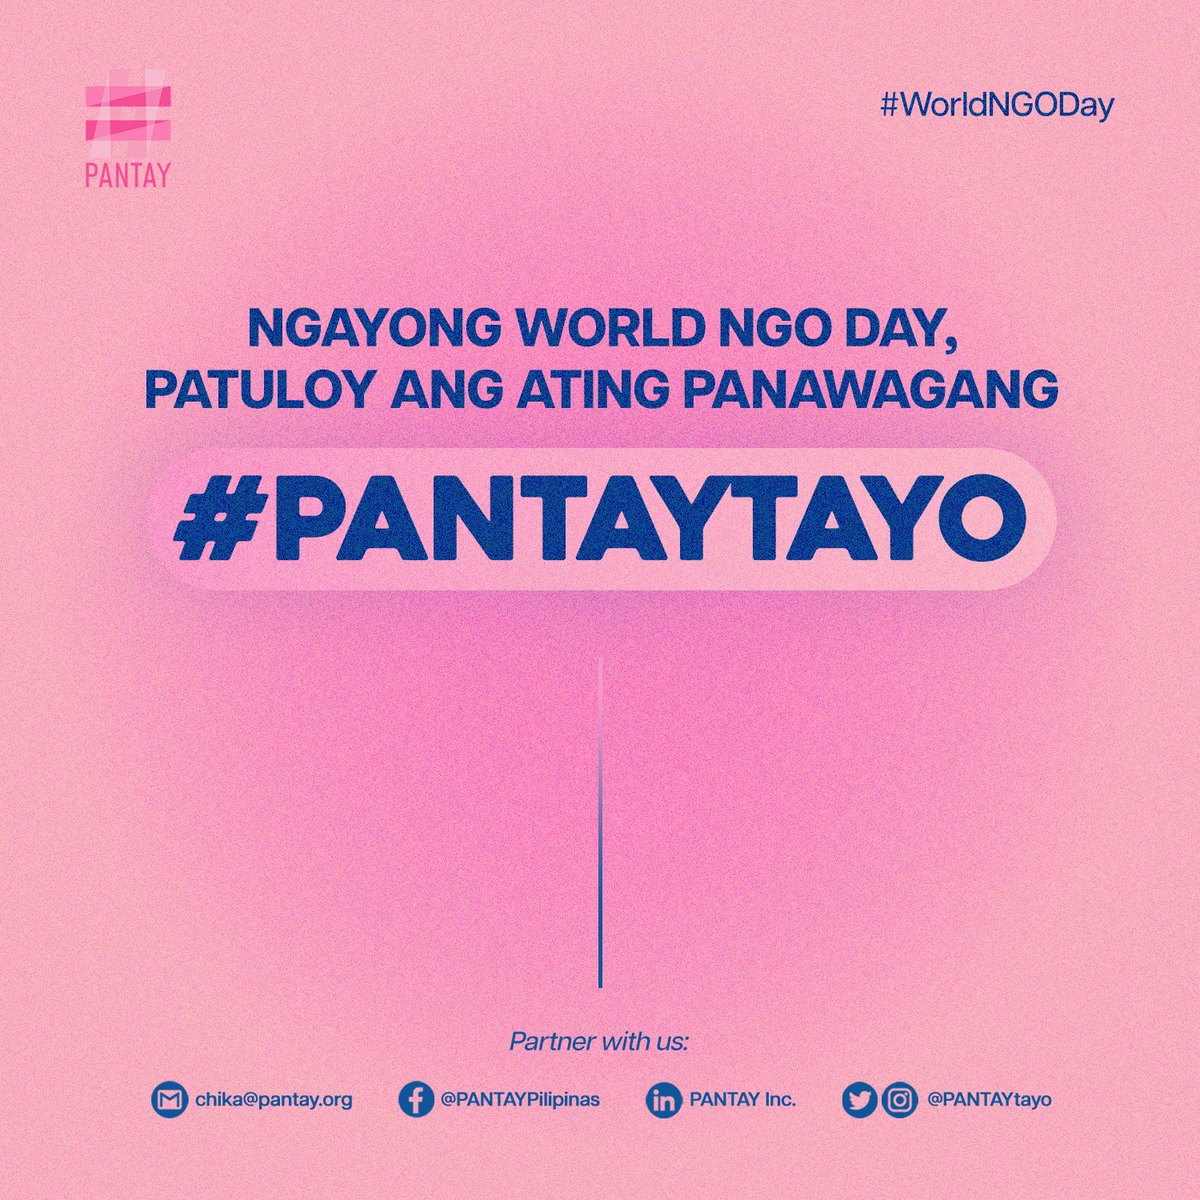 PANTAYtayo tweet picture